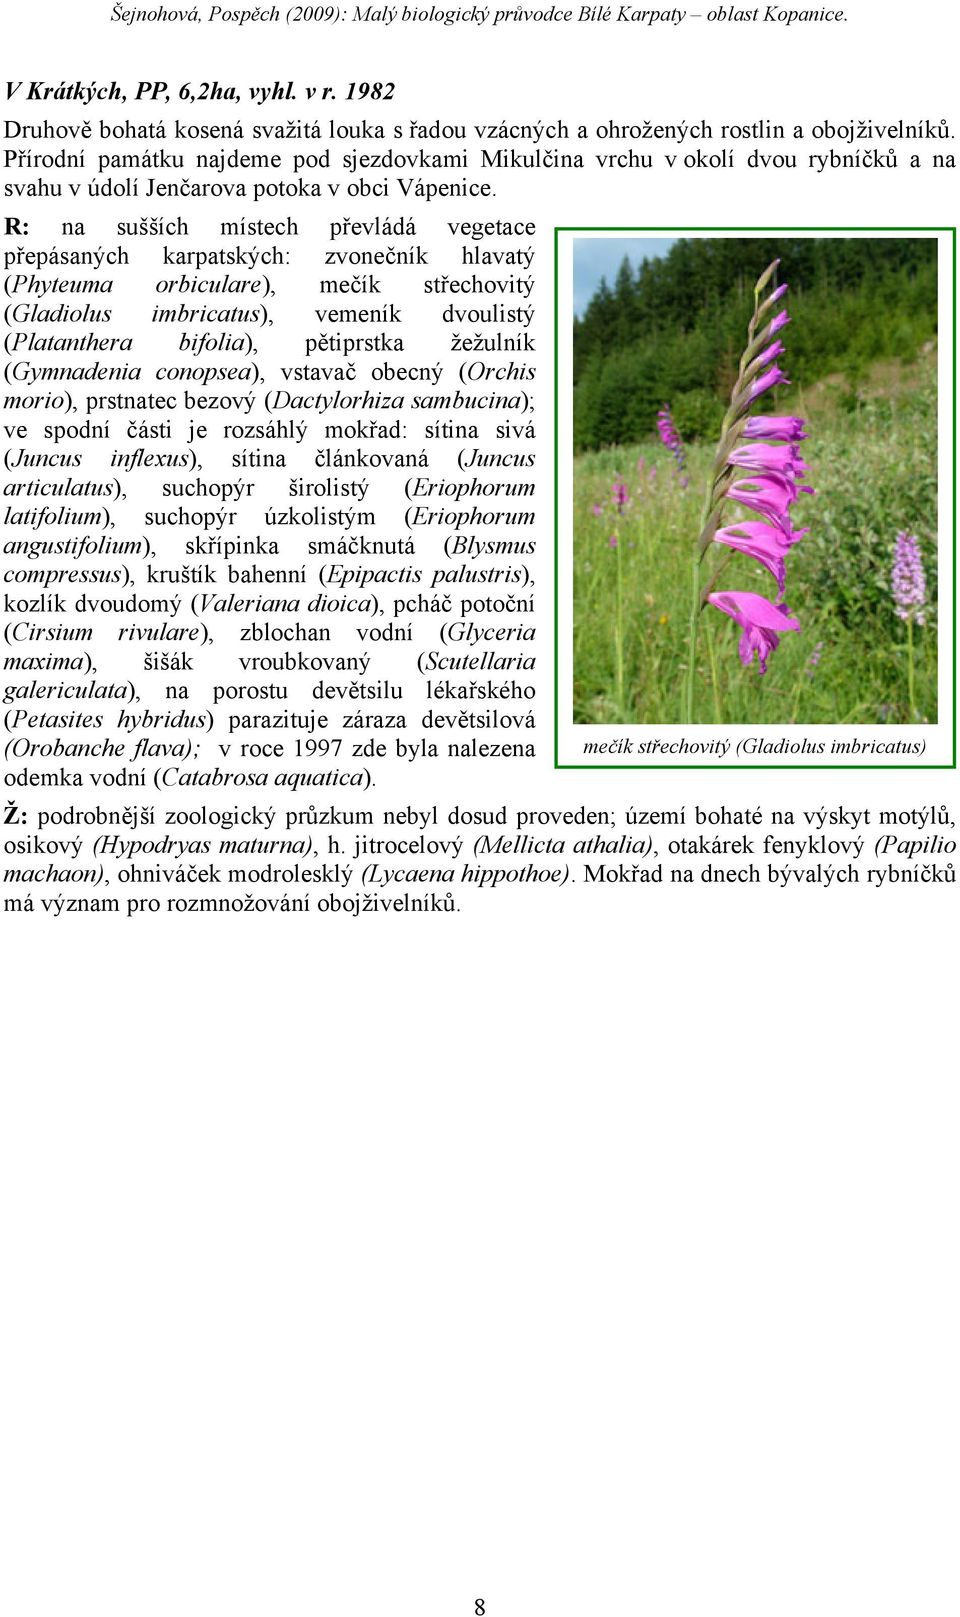 R: na sušších místech převládá vegetace přepásaných karpatských: zvonečník hlavatý (Phyteuma orbiculare), mečík střechovitý (Gladiolus imbricatus), vemeník dvoulistý (Platanthera bifolia), pětiprstka